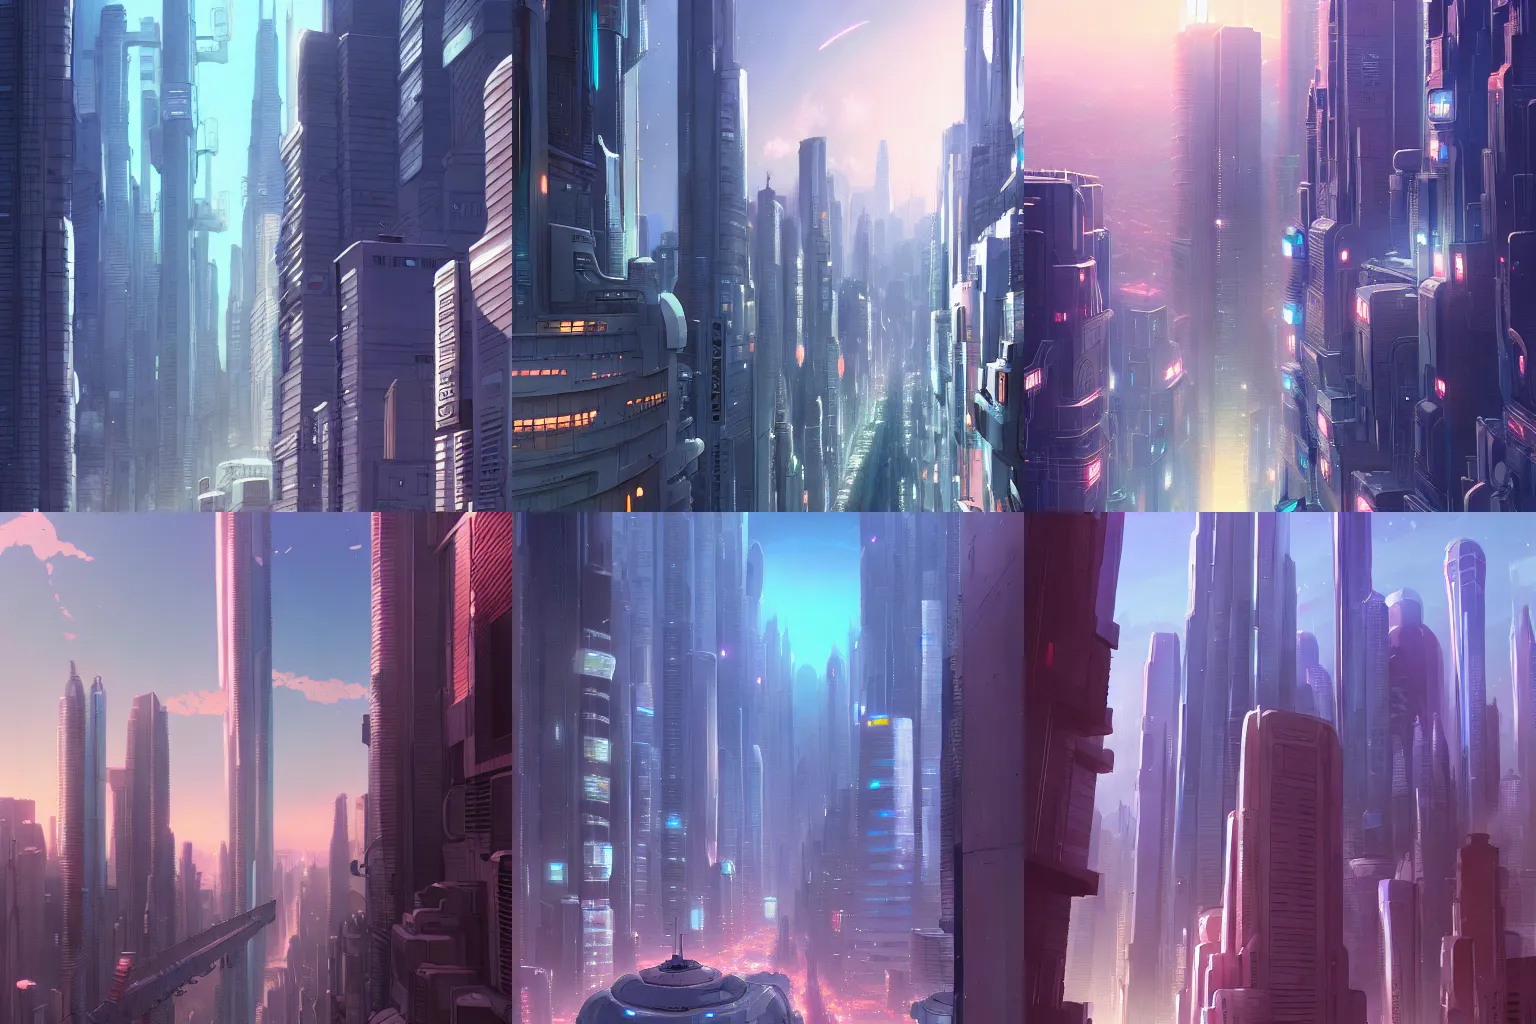 Prompt: detailed, sharp, an alien cityscape by Makoto Shinkai, digital art, illustration, trending on artstation, HD, 8K, highly detailed, good lighting, beautiful, epic